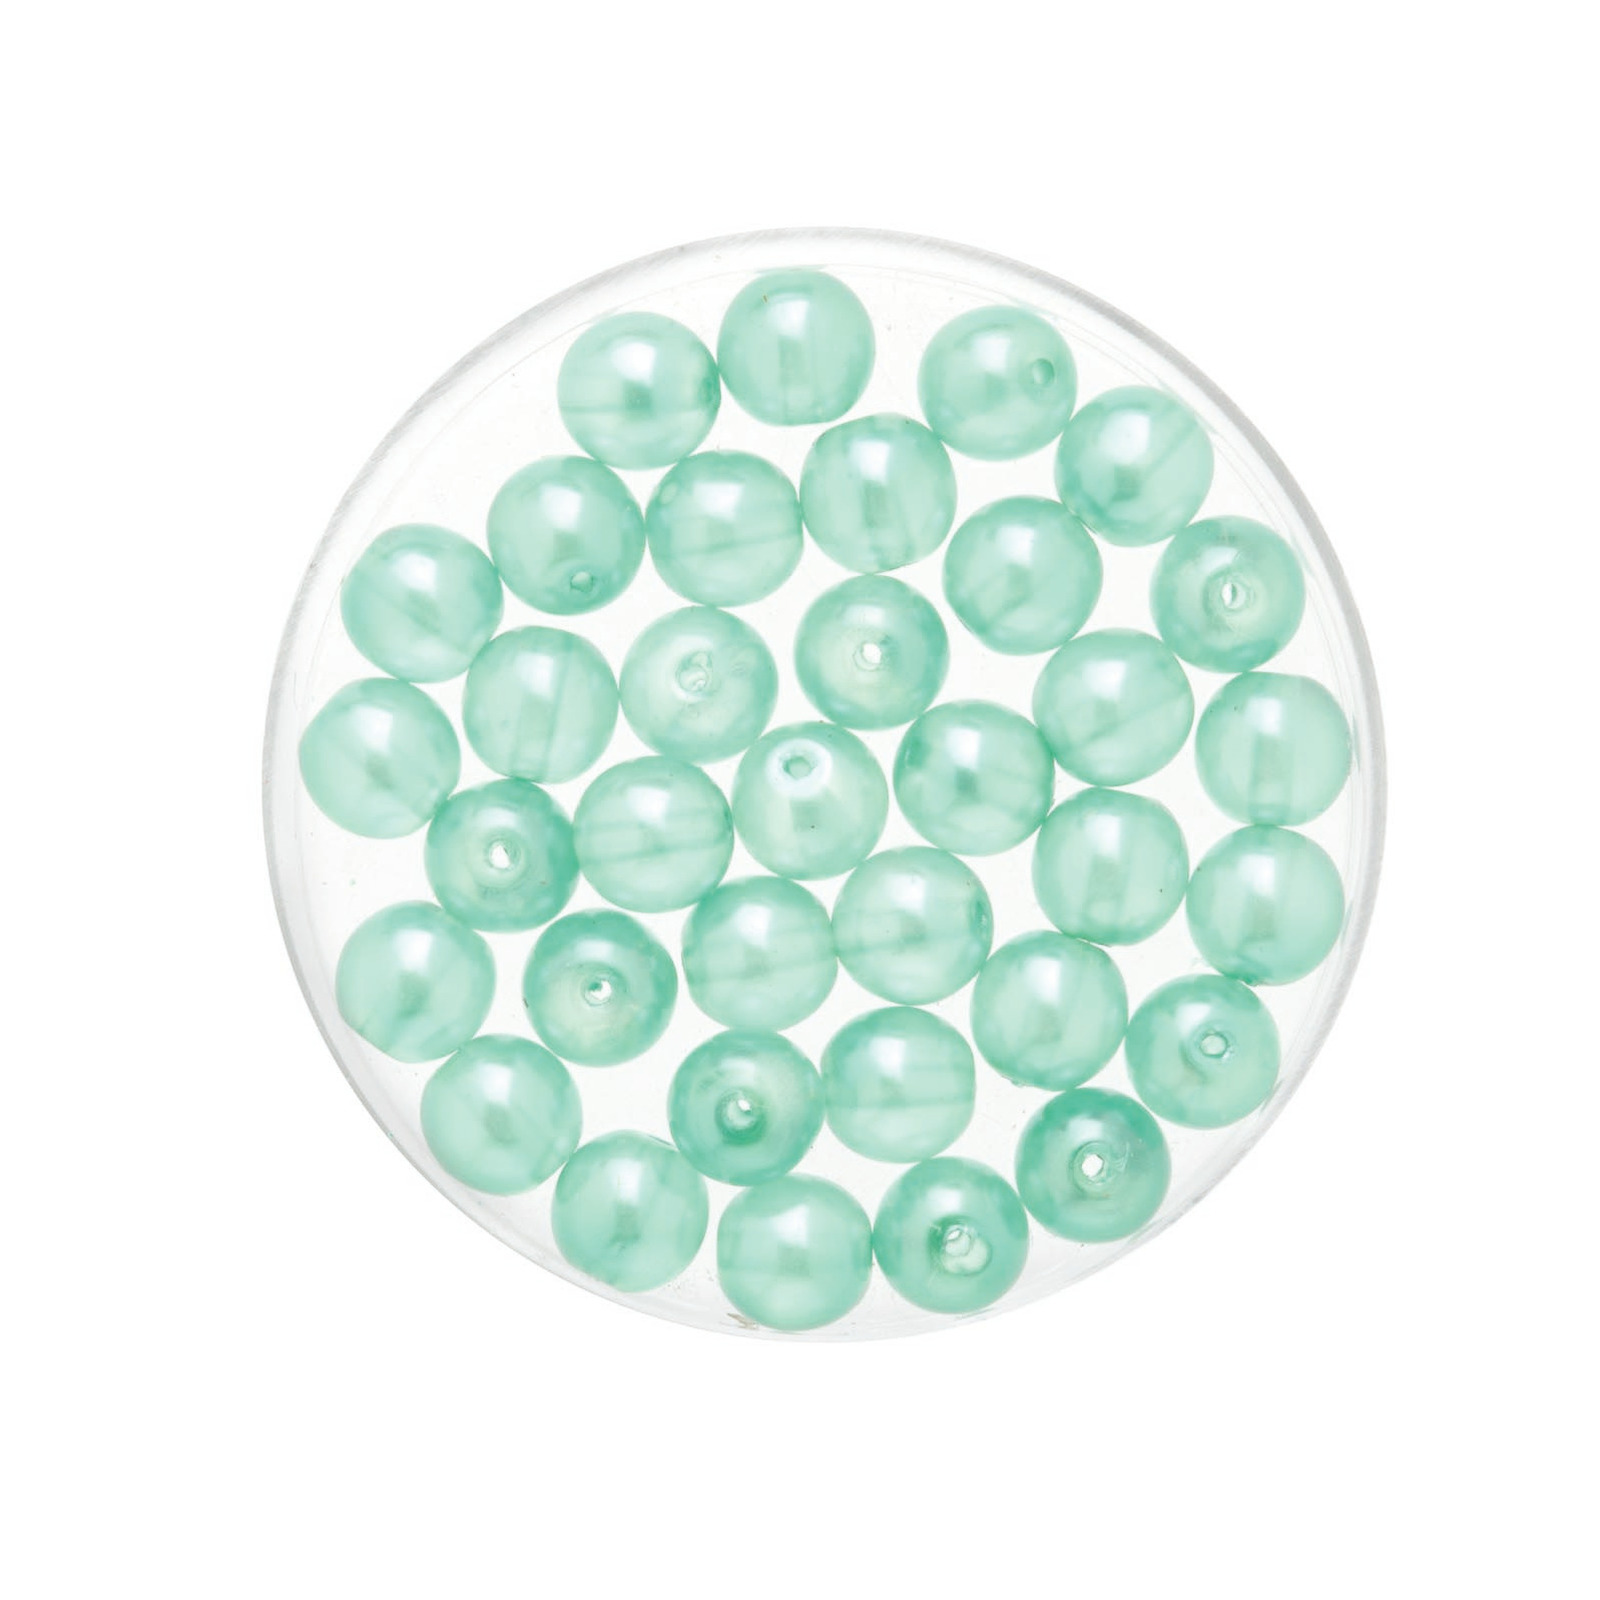 200x stuks sieraden maken Boheemse glaskralen in het transparant aqua blauw van 6 mm